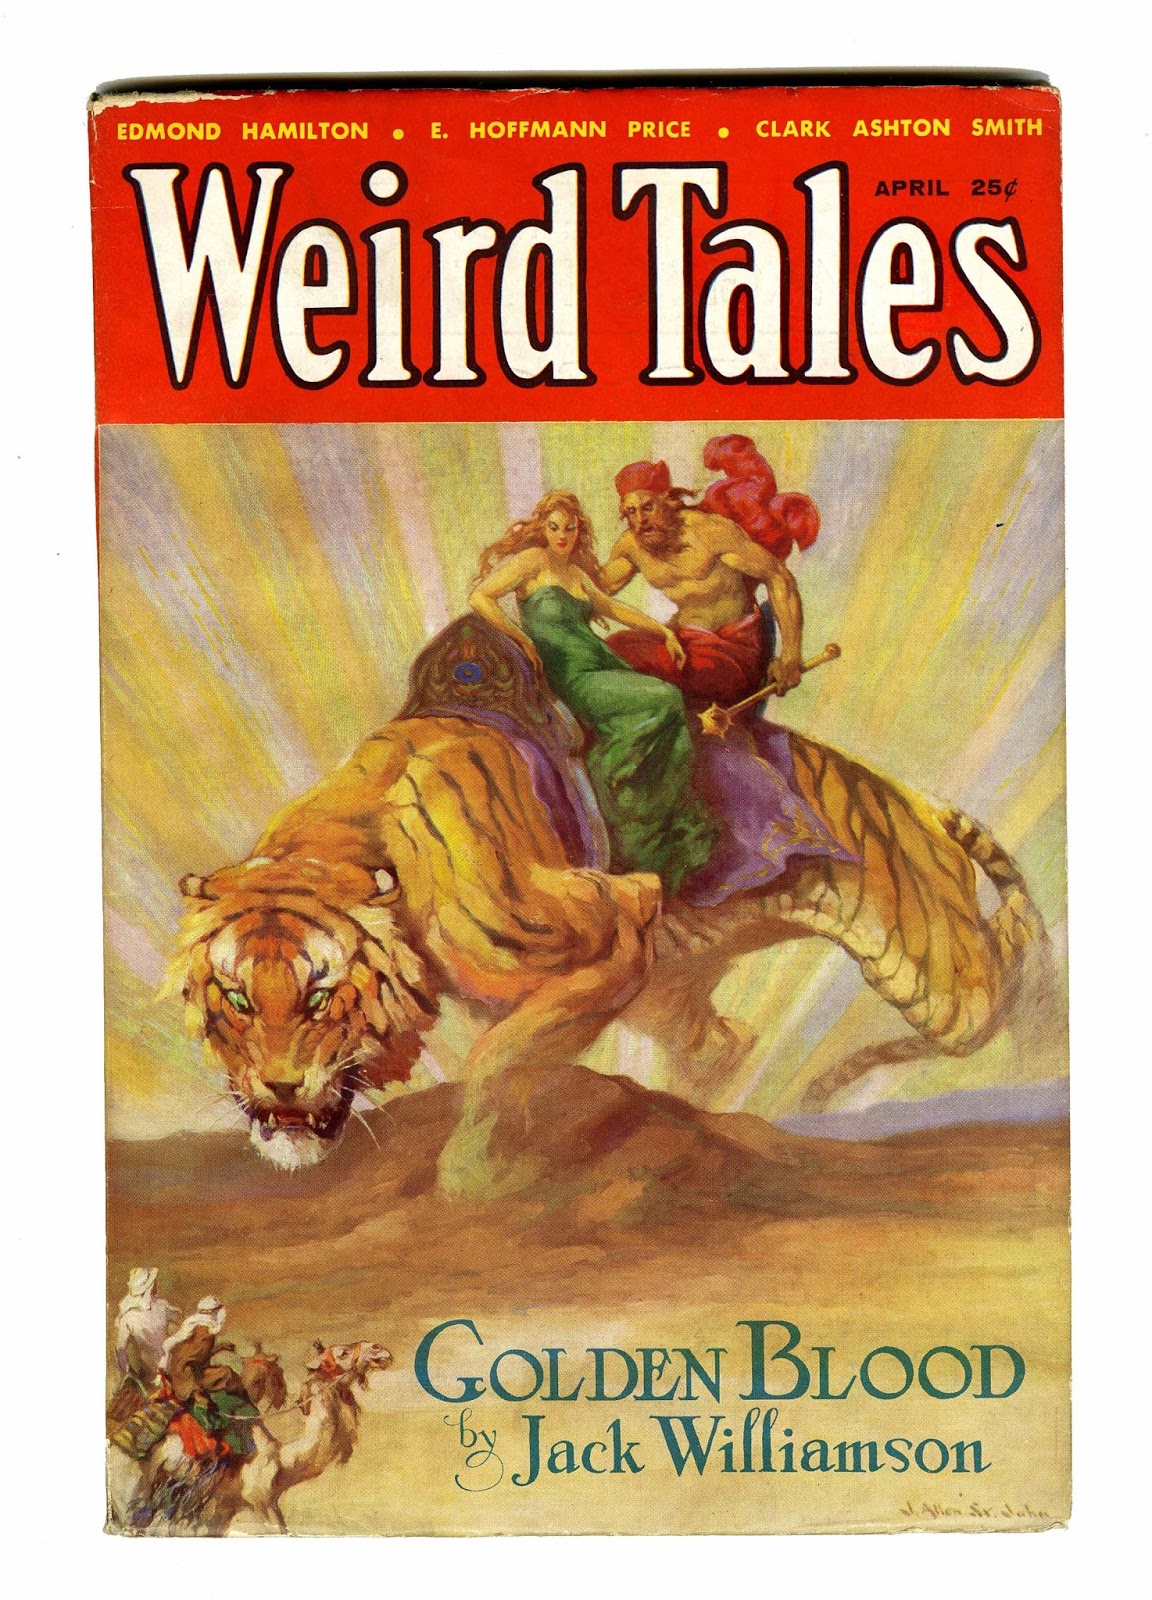 Weird Tales pulp magazine cover by J. Allen St. John